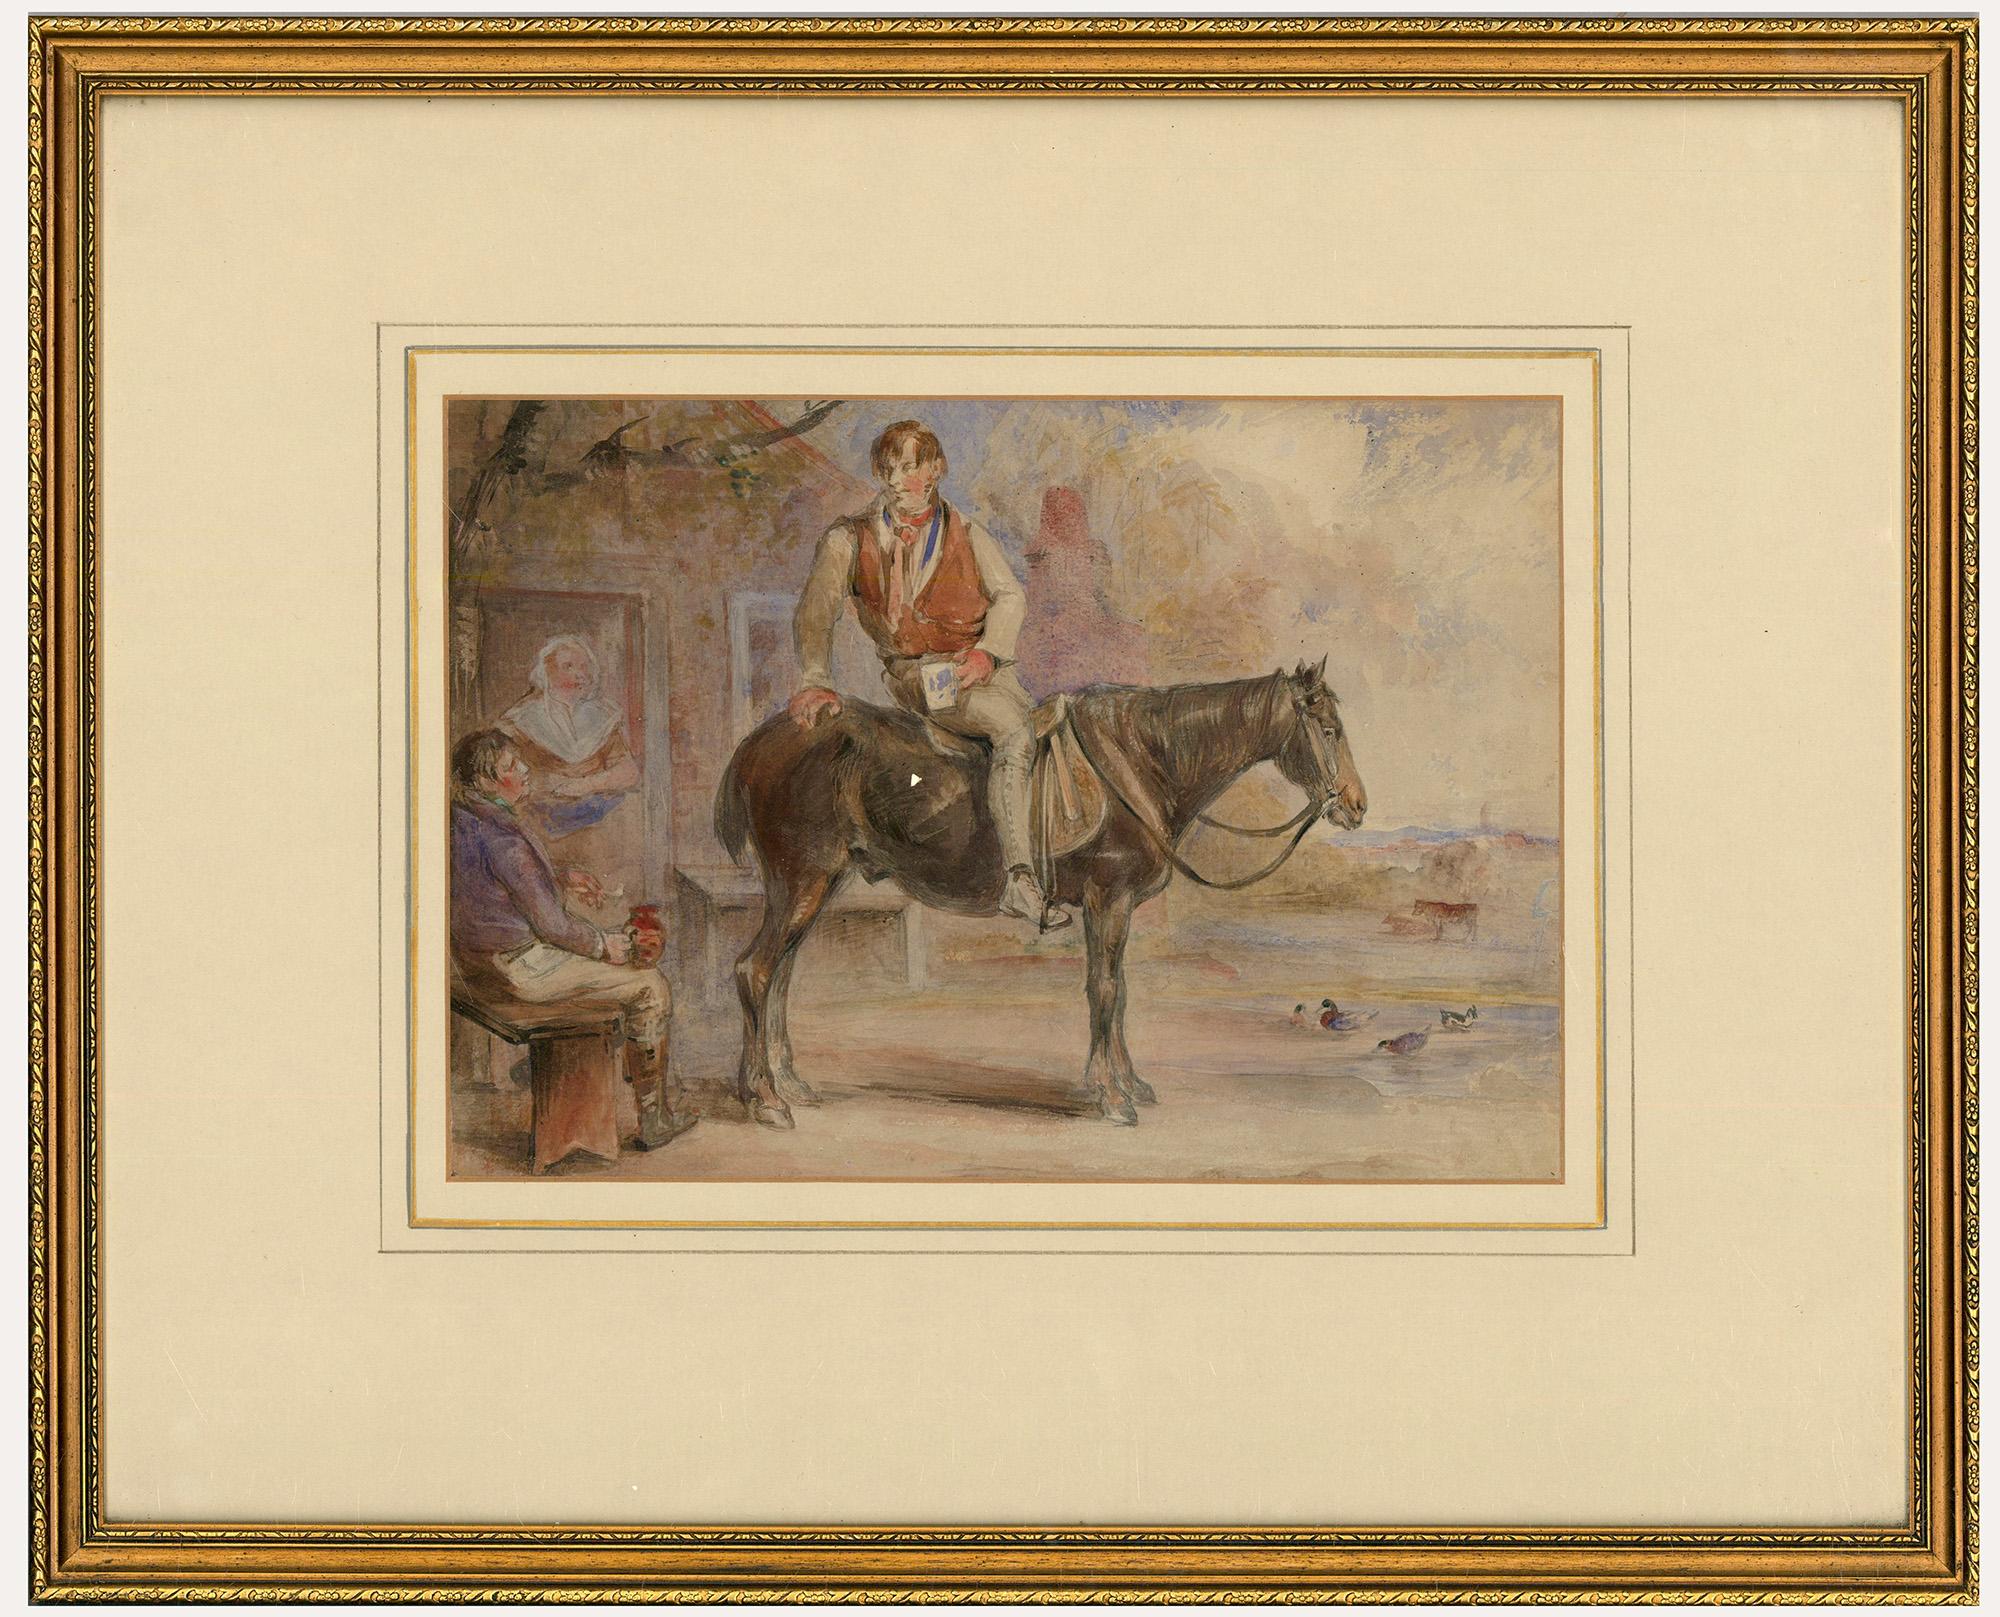 Unknown Figurative Art - 19th Century Watercolour - A Horse Walks into a Pub